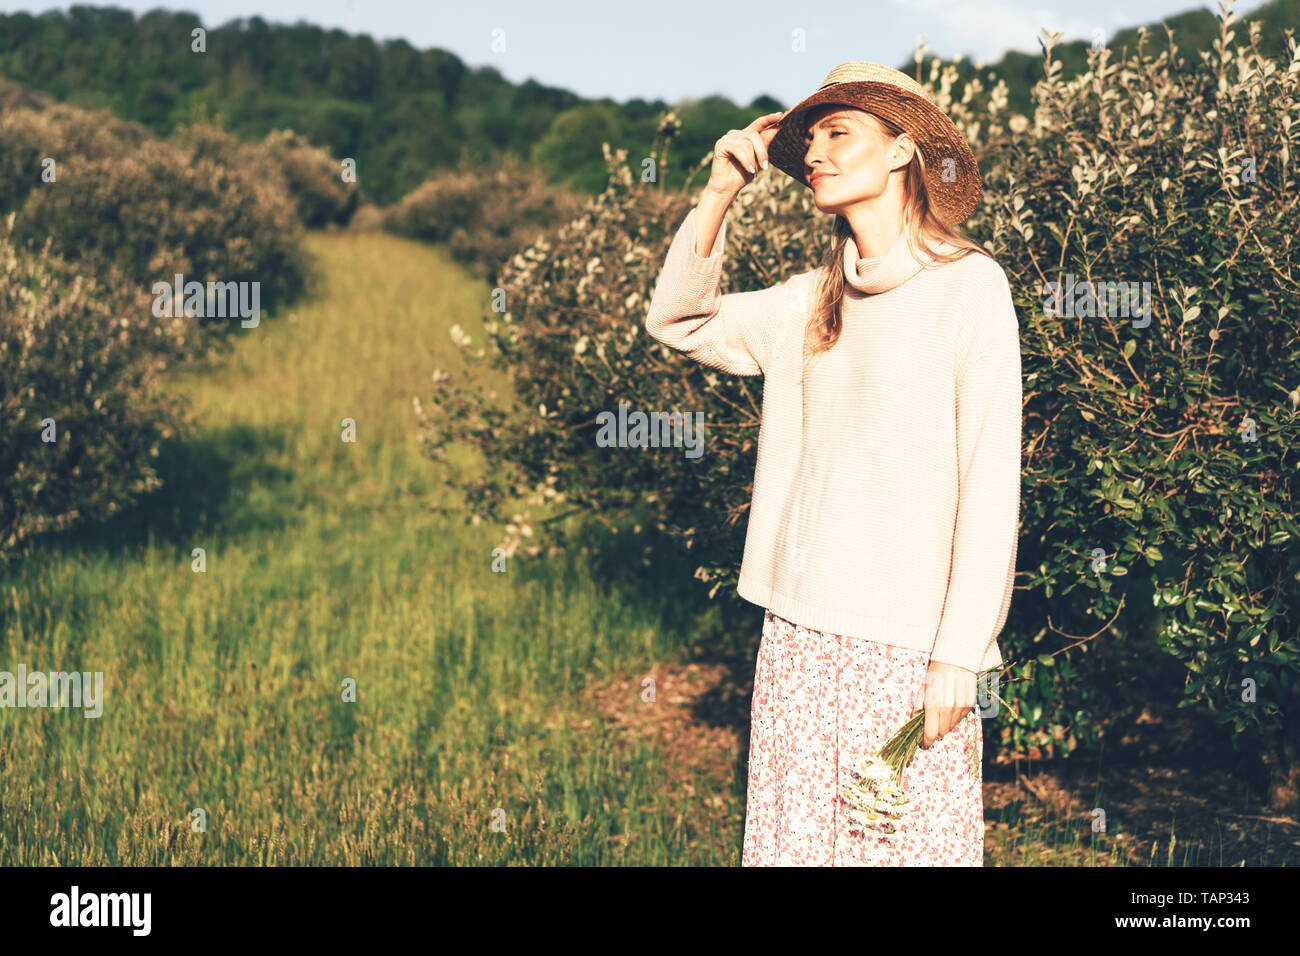 Cute blonde girl dans un style provençal et chapeau de paille, promenade dans le jardin verdoyant, le concept de bonheur et l'insouciance Banque D'Images